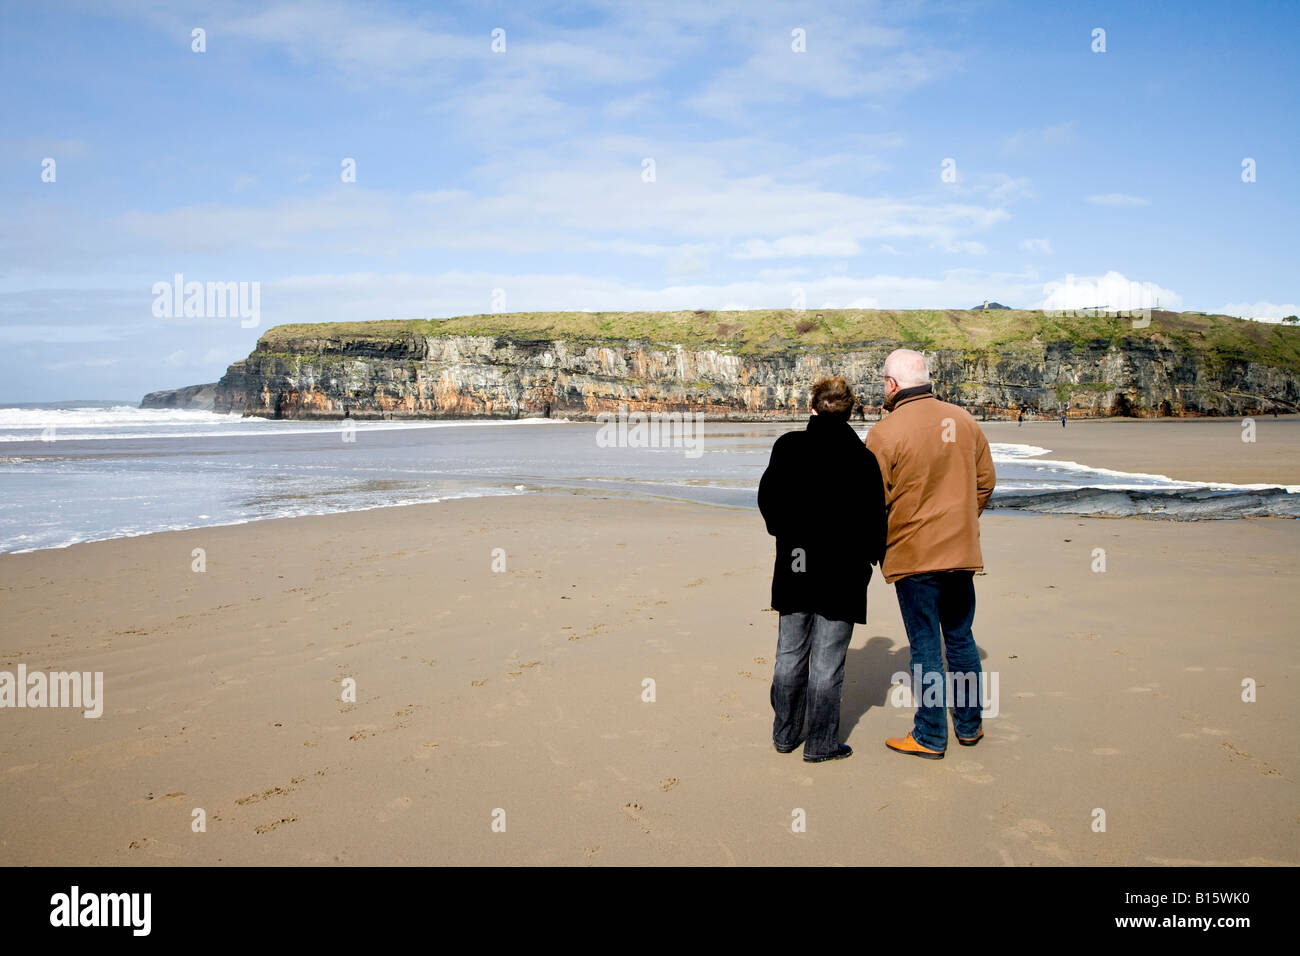 Vue arrière d'un couple avec vue sur mer en standing on beach Banque D'Images